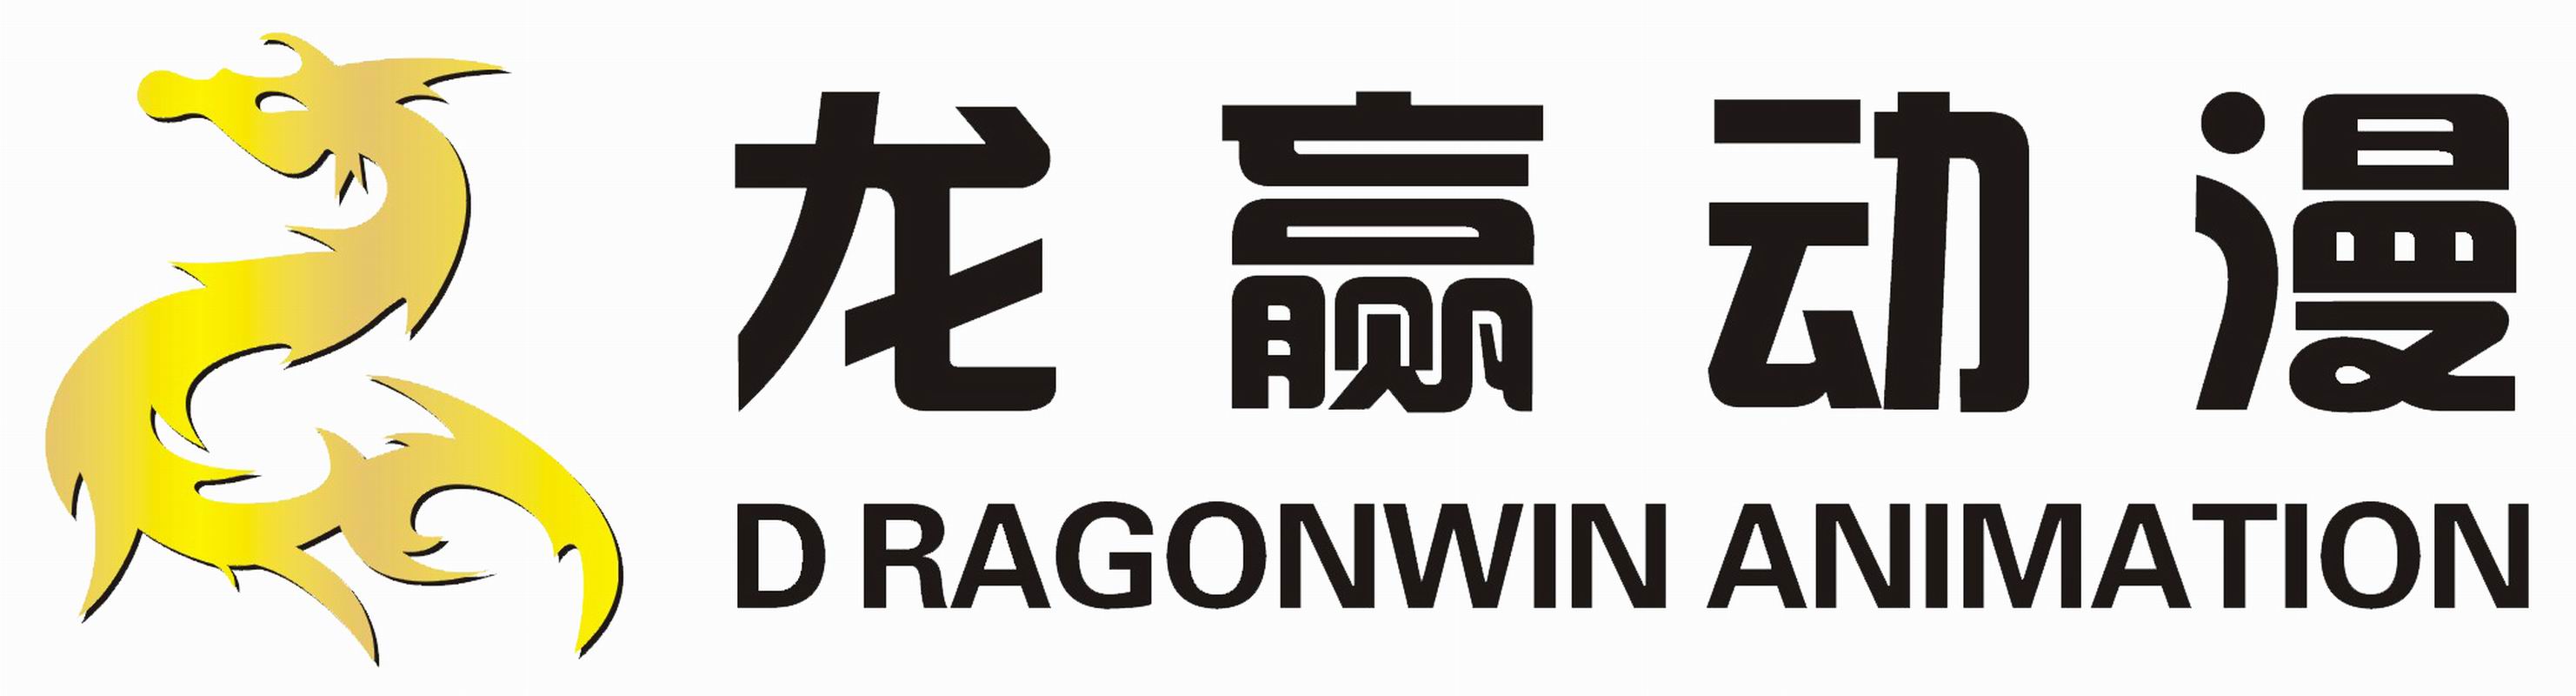 Dragonwin Animation Co., Ltd.